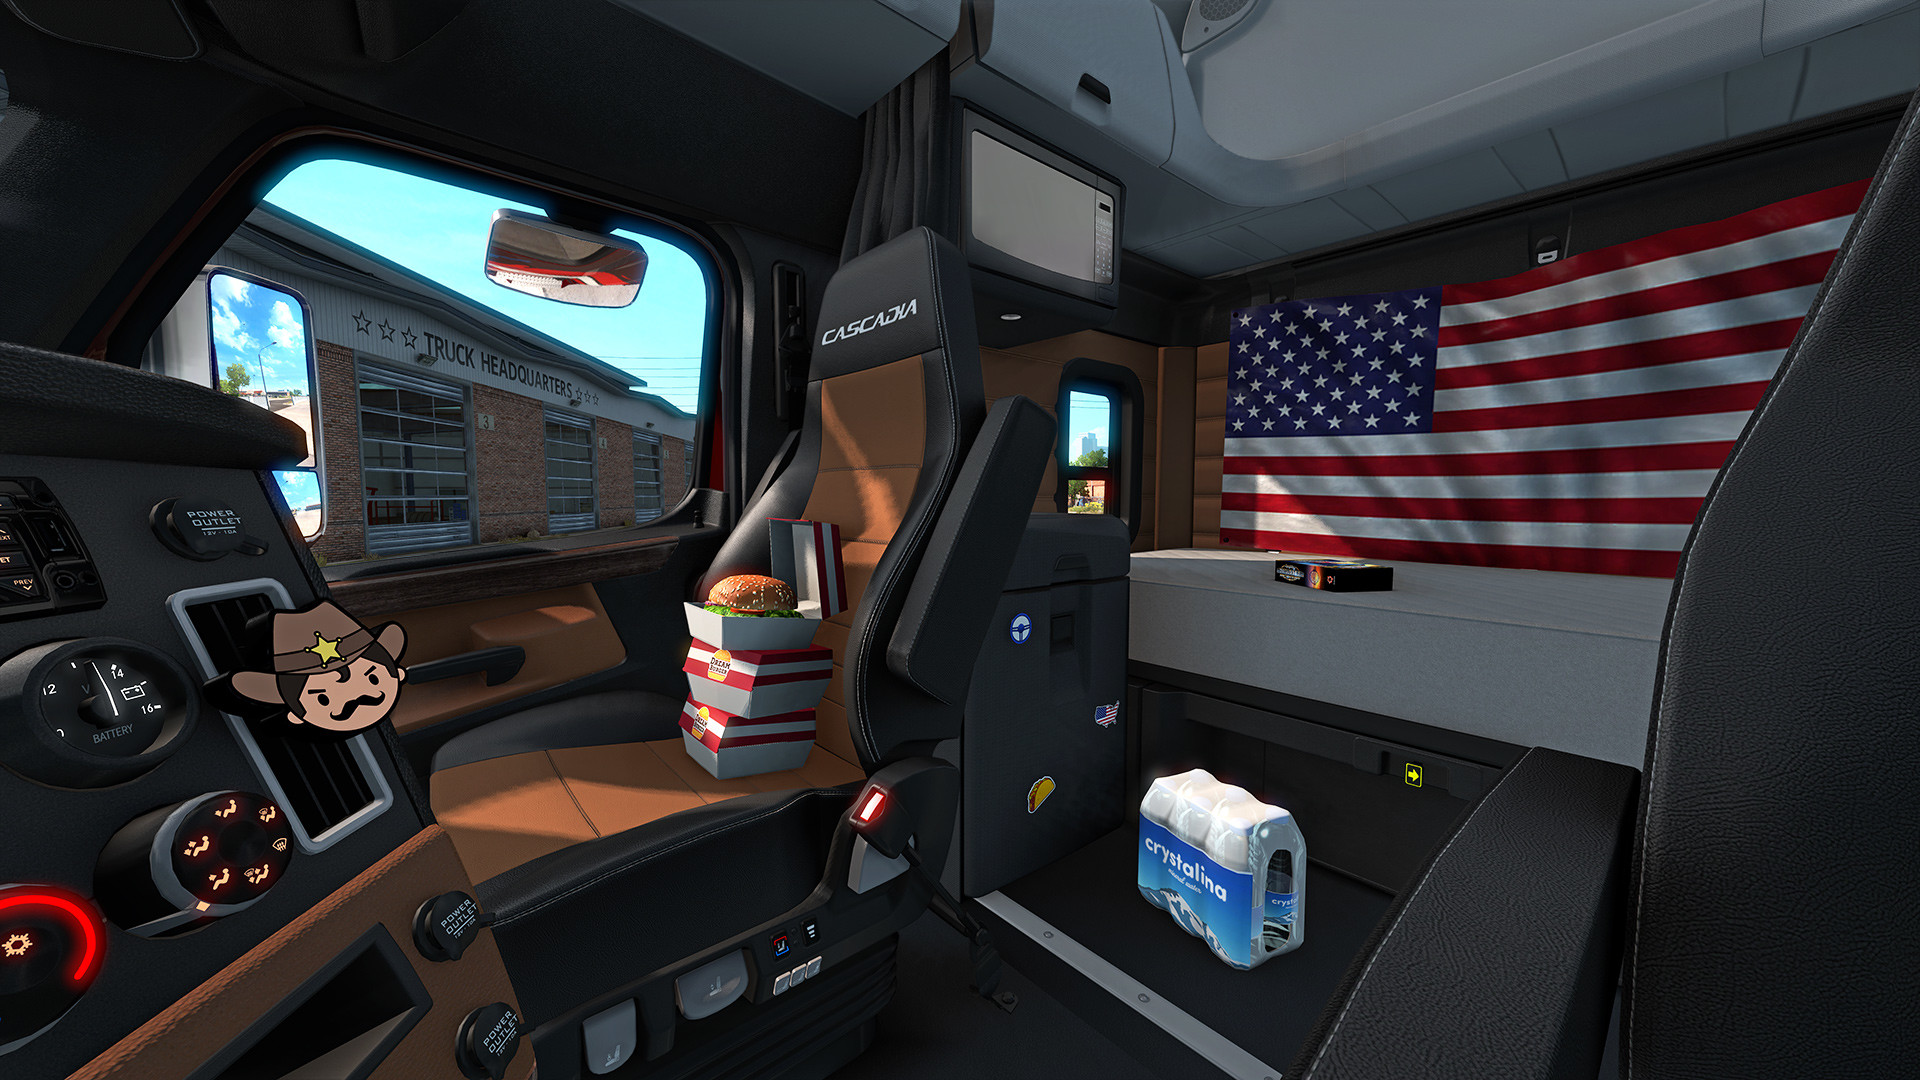 American Truck Simulator - Cabin Accessories DLC Steam CD Key, 124.46$